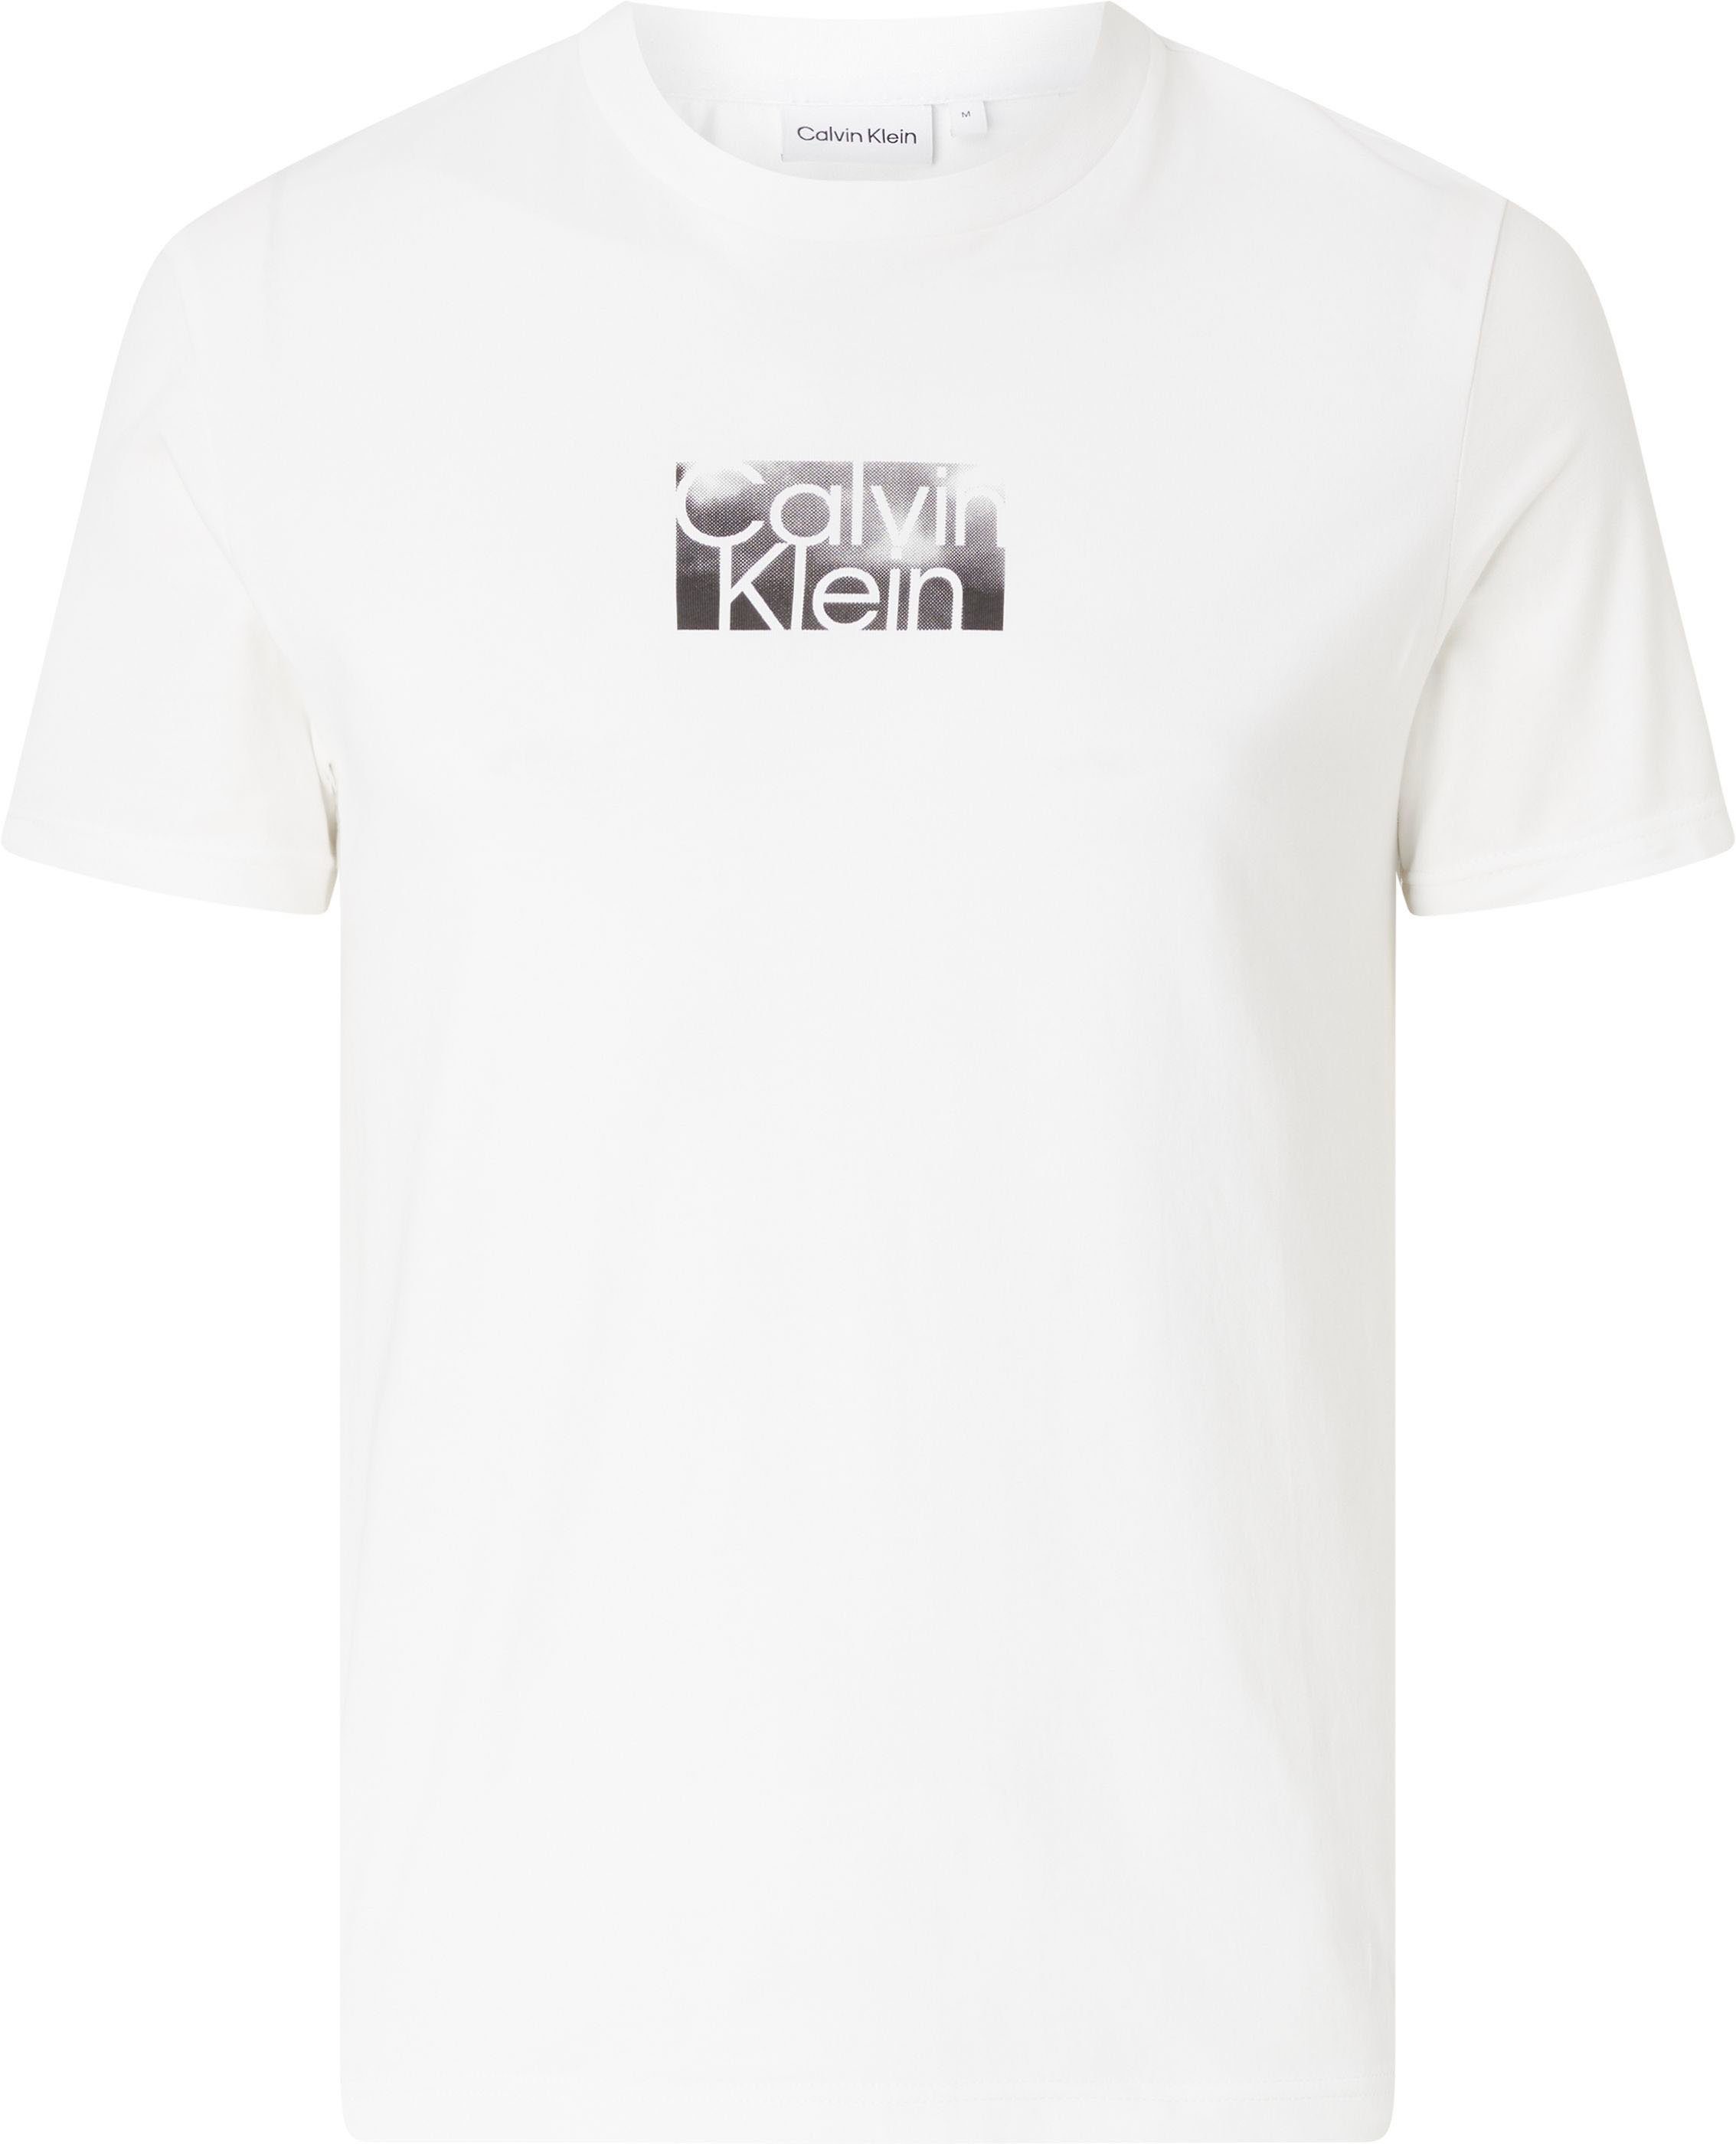 Calvin Klein kann Logoschriftzug, Alltag kombiniert im ideal T-Shirt T-Shirt Das mit Big&Tall werden